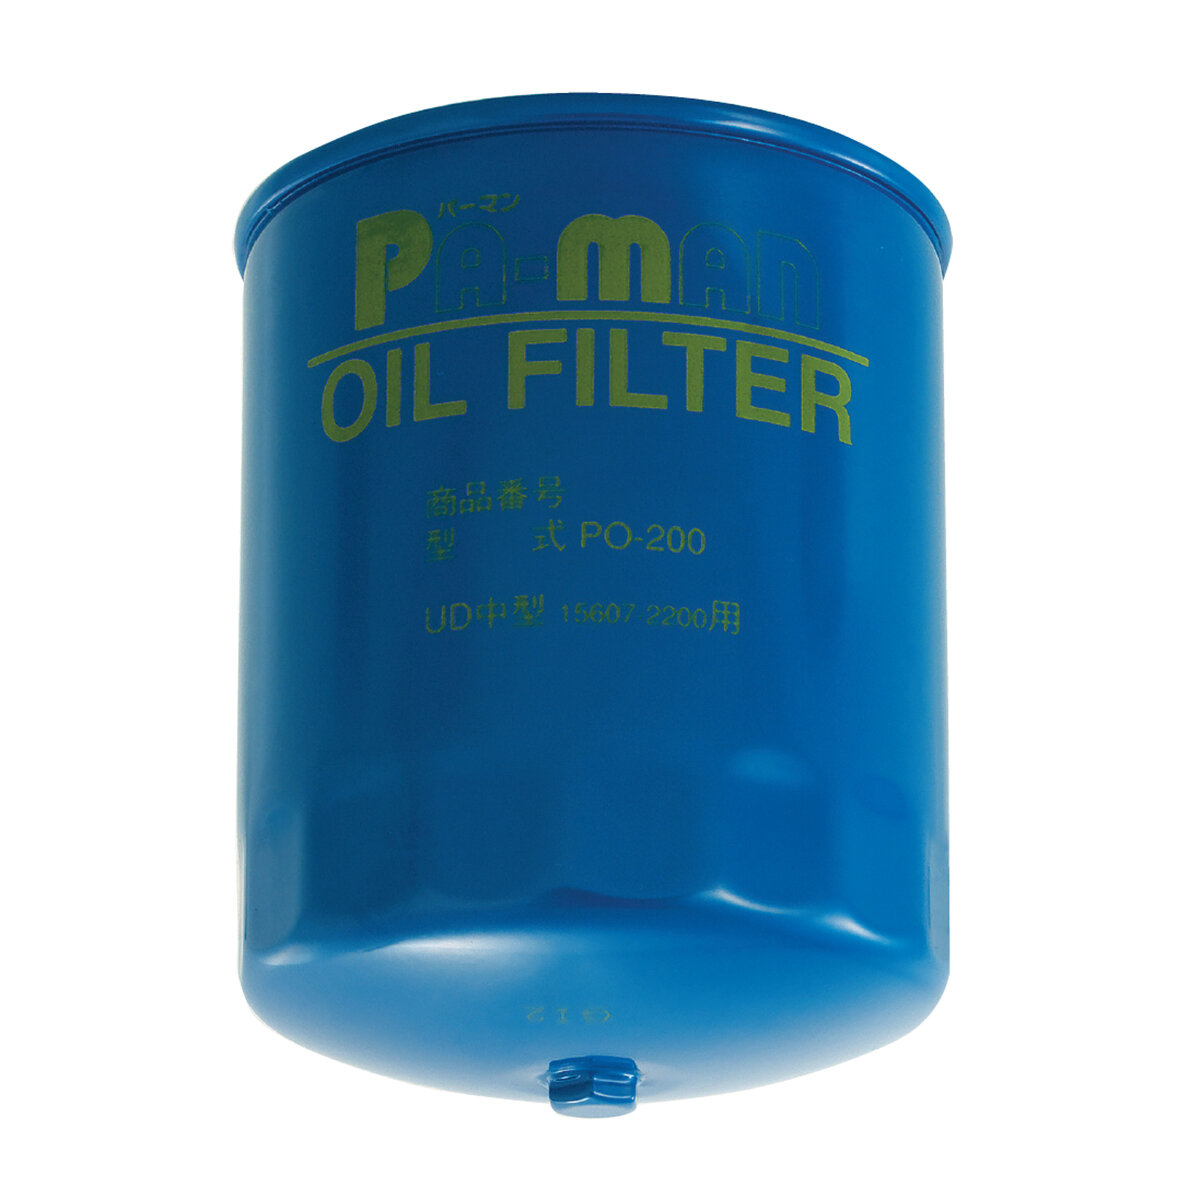 PMC オイルフィルター UDトラックス クオン oil filter - パーツ